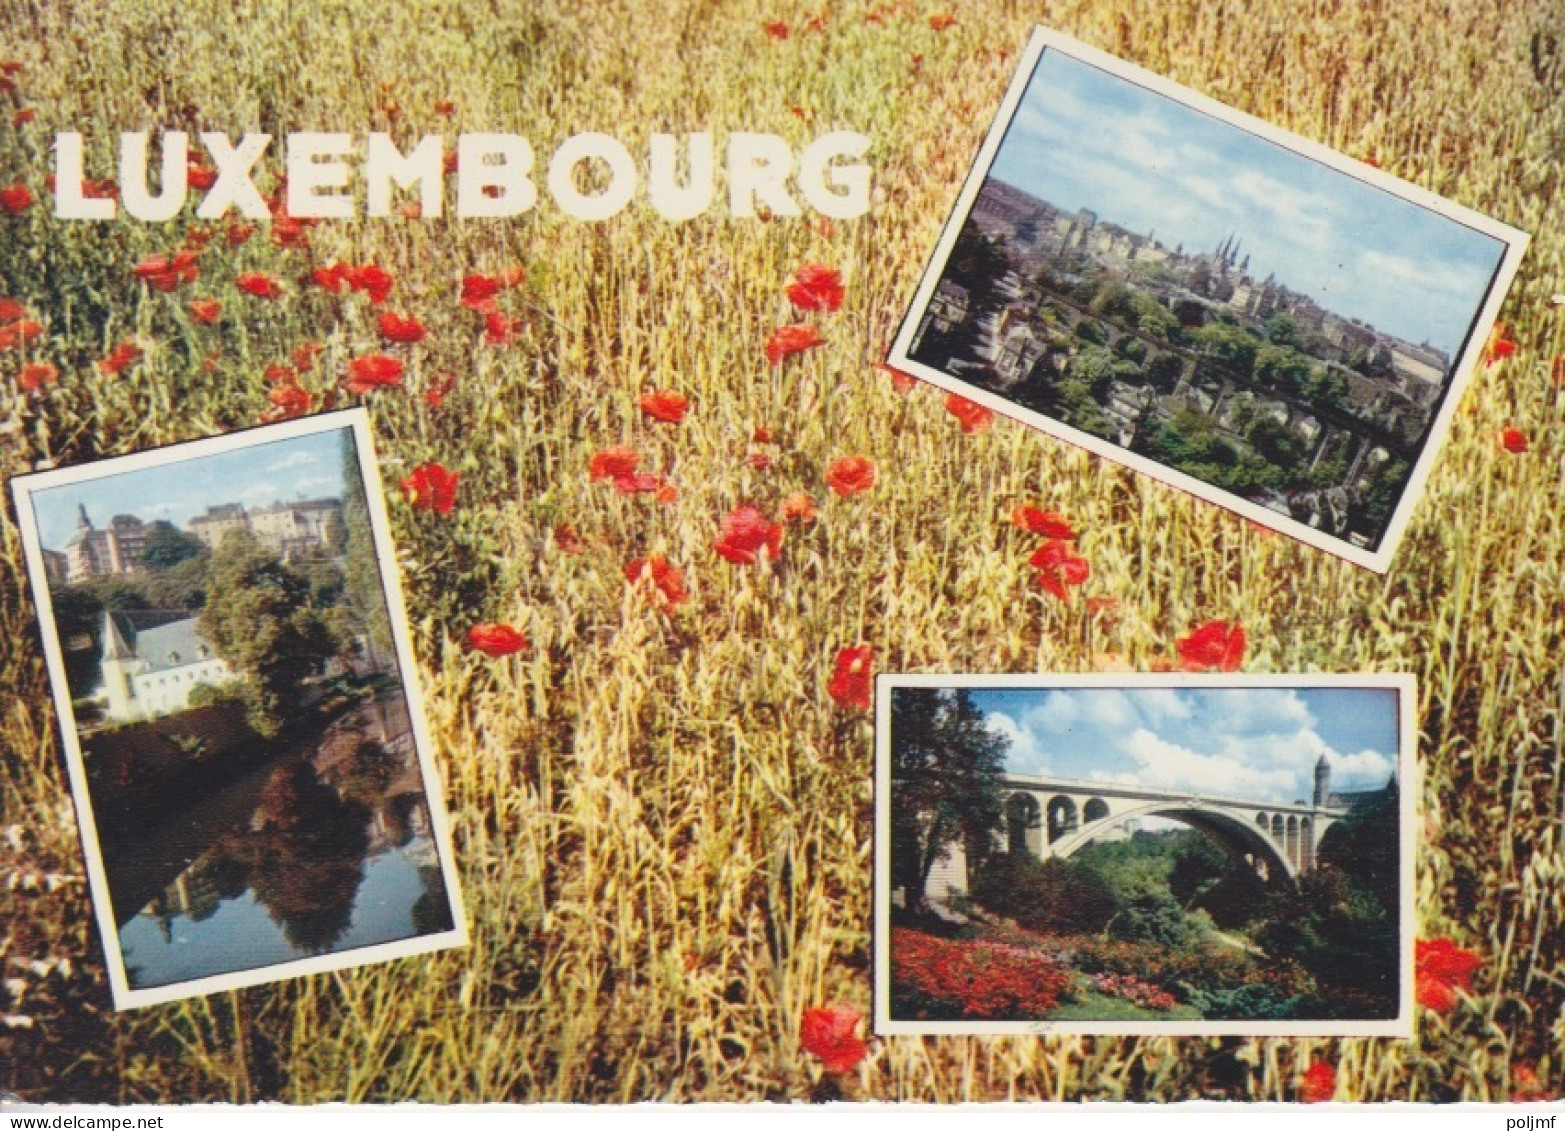 CP "Paysages" Obl. Luxembourg C Le 28/6/71 Sur N° 664 Pour Pont St Vincent - Cartas & Documentos